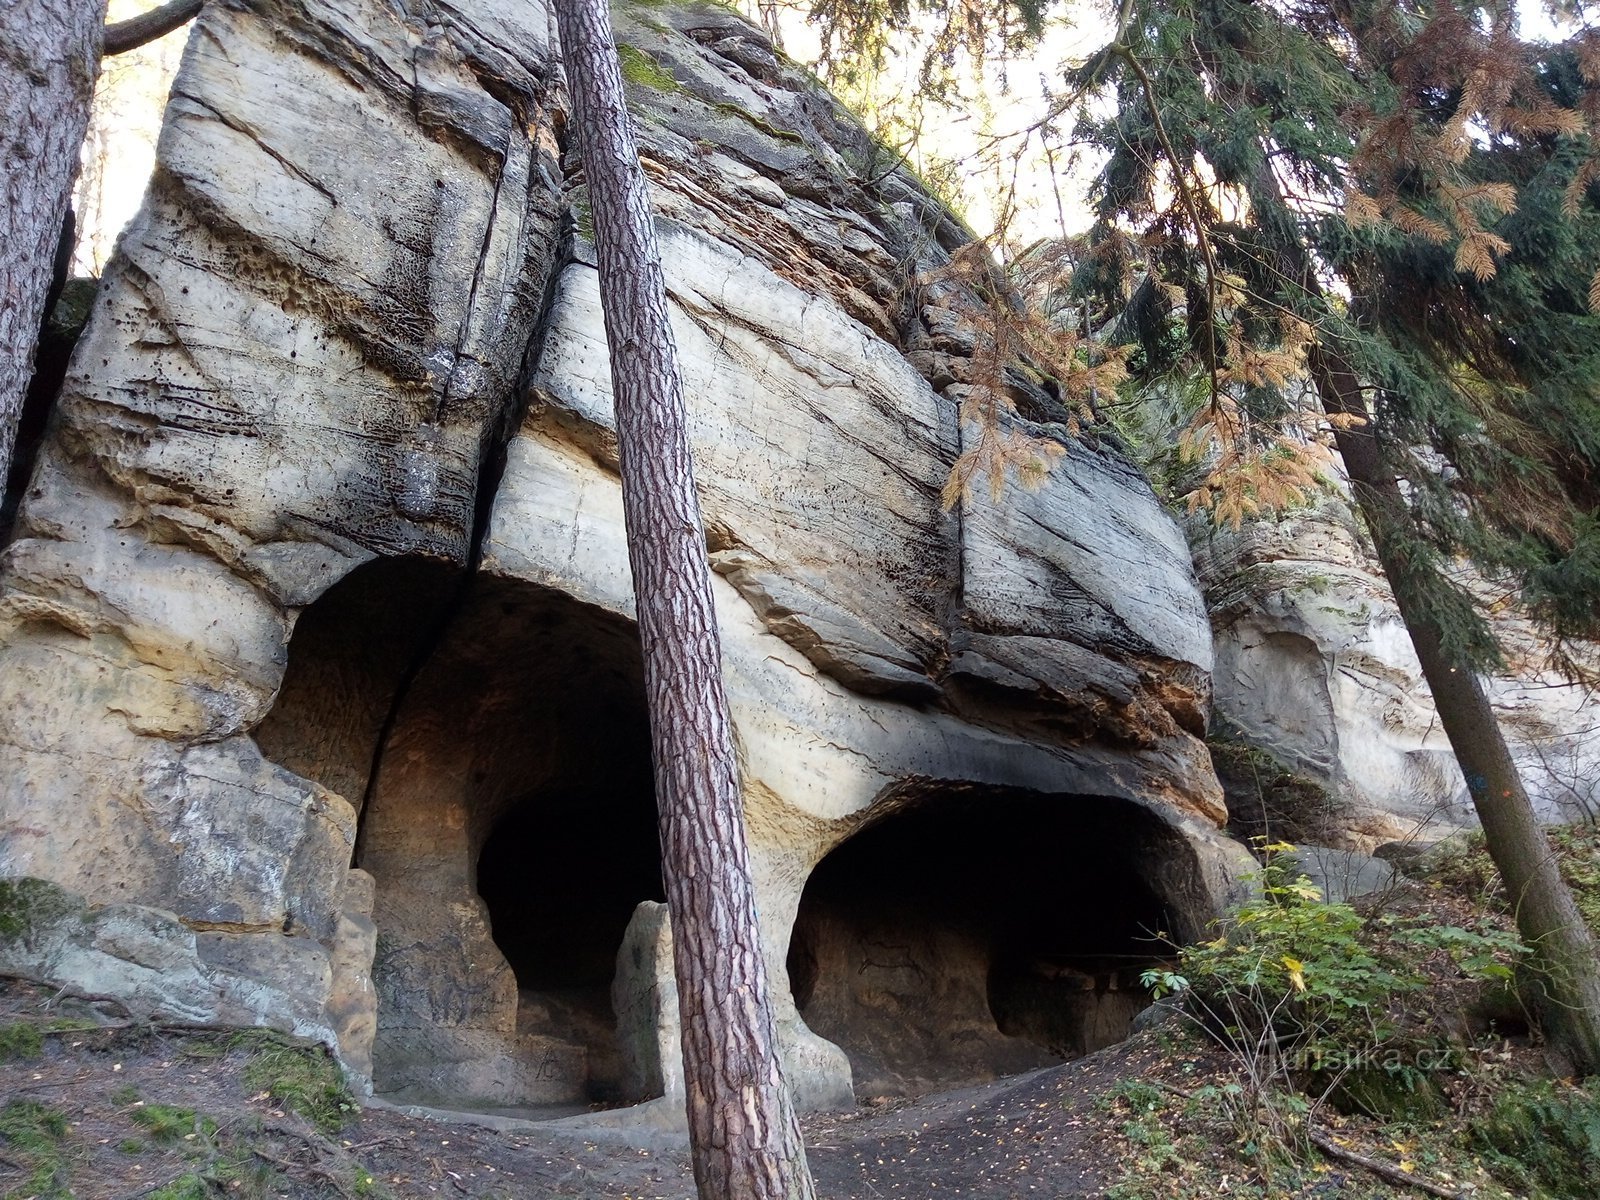 Malá Cikánská jeskyně